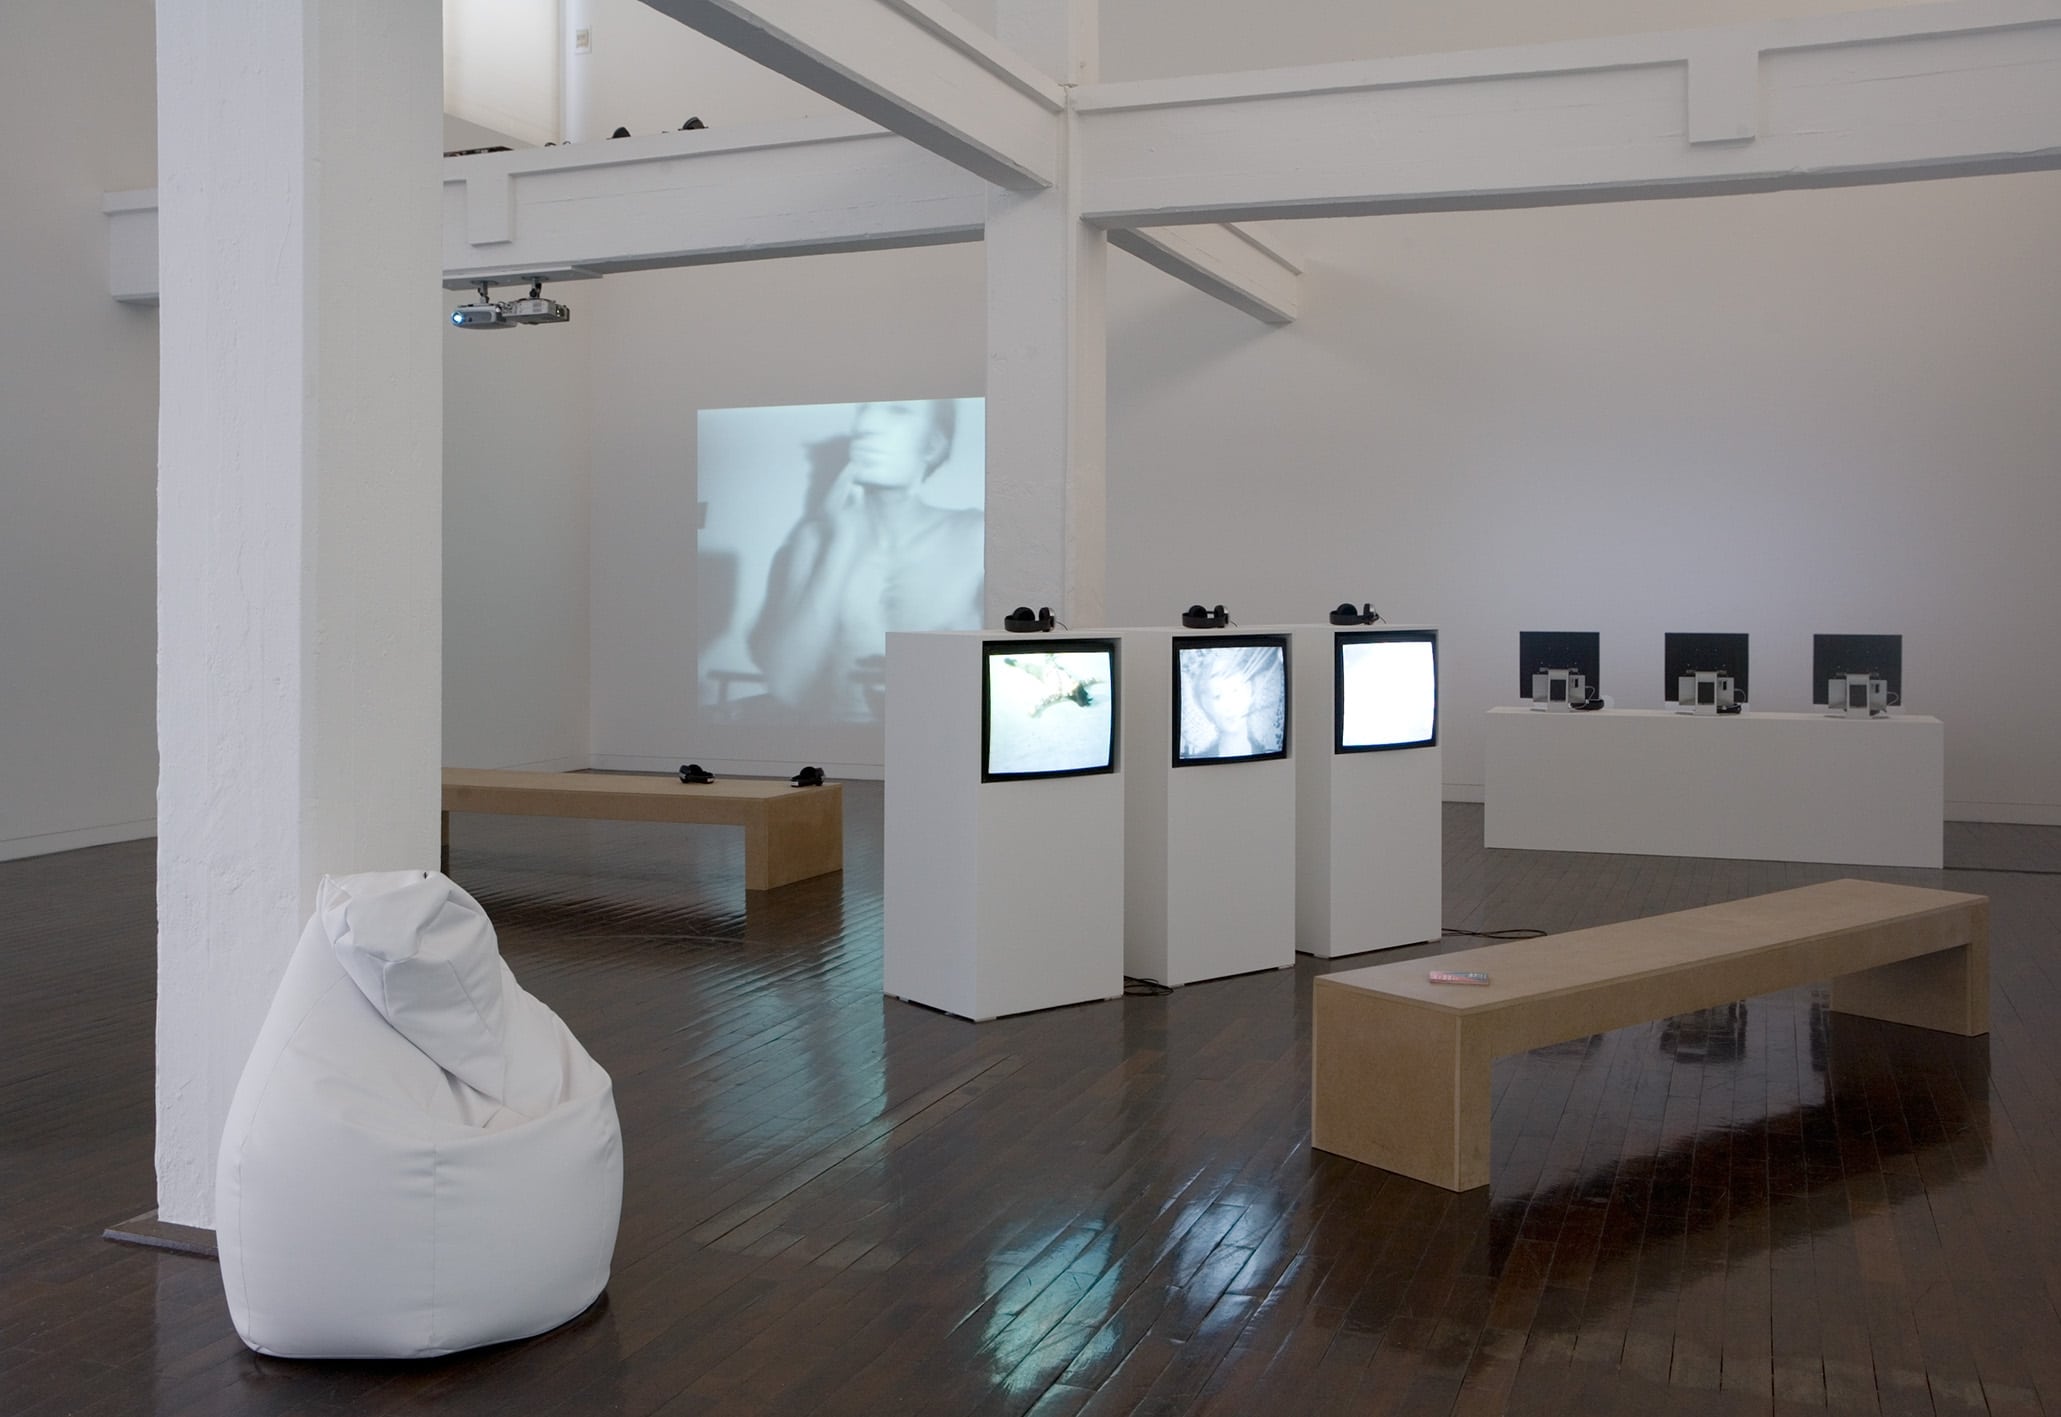 Videoarchiv, Ausstellungsansicht. Foto: Carl Brunn